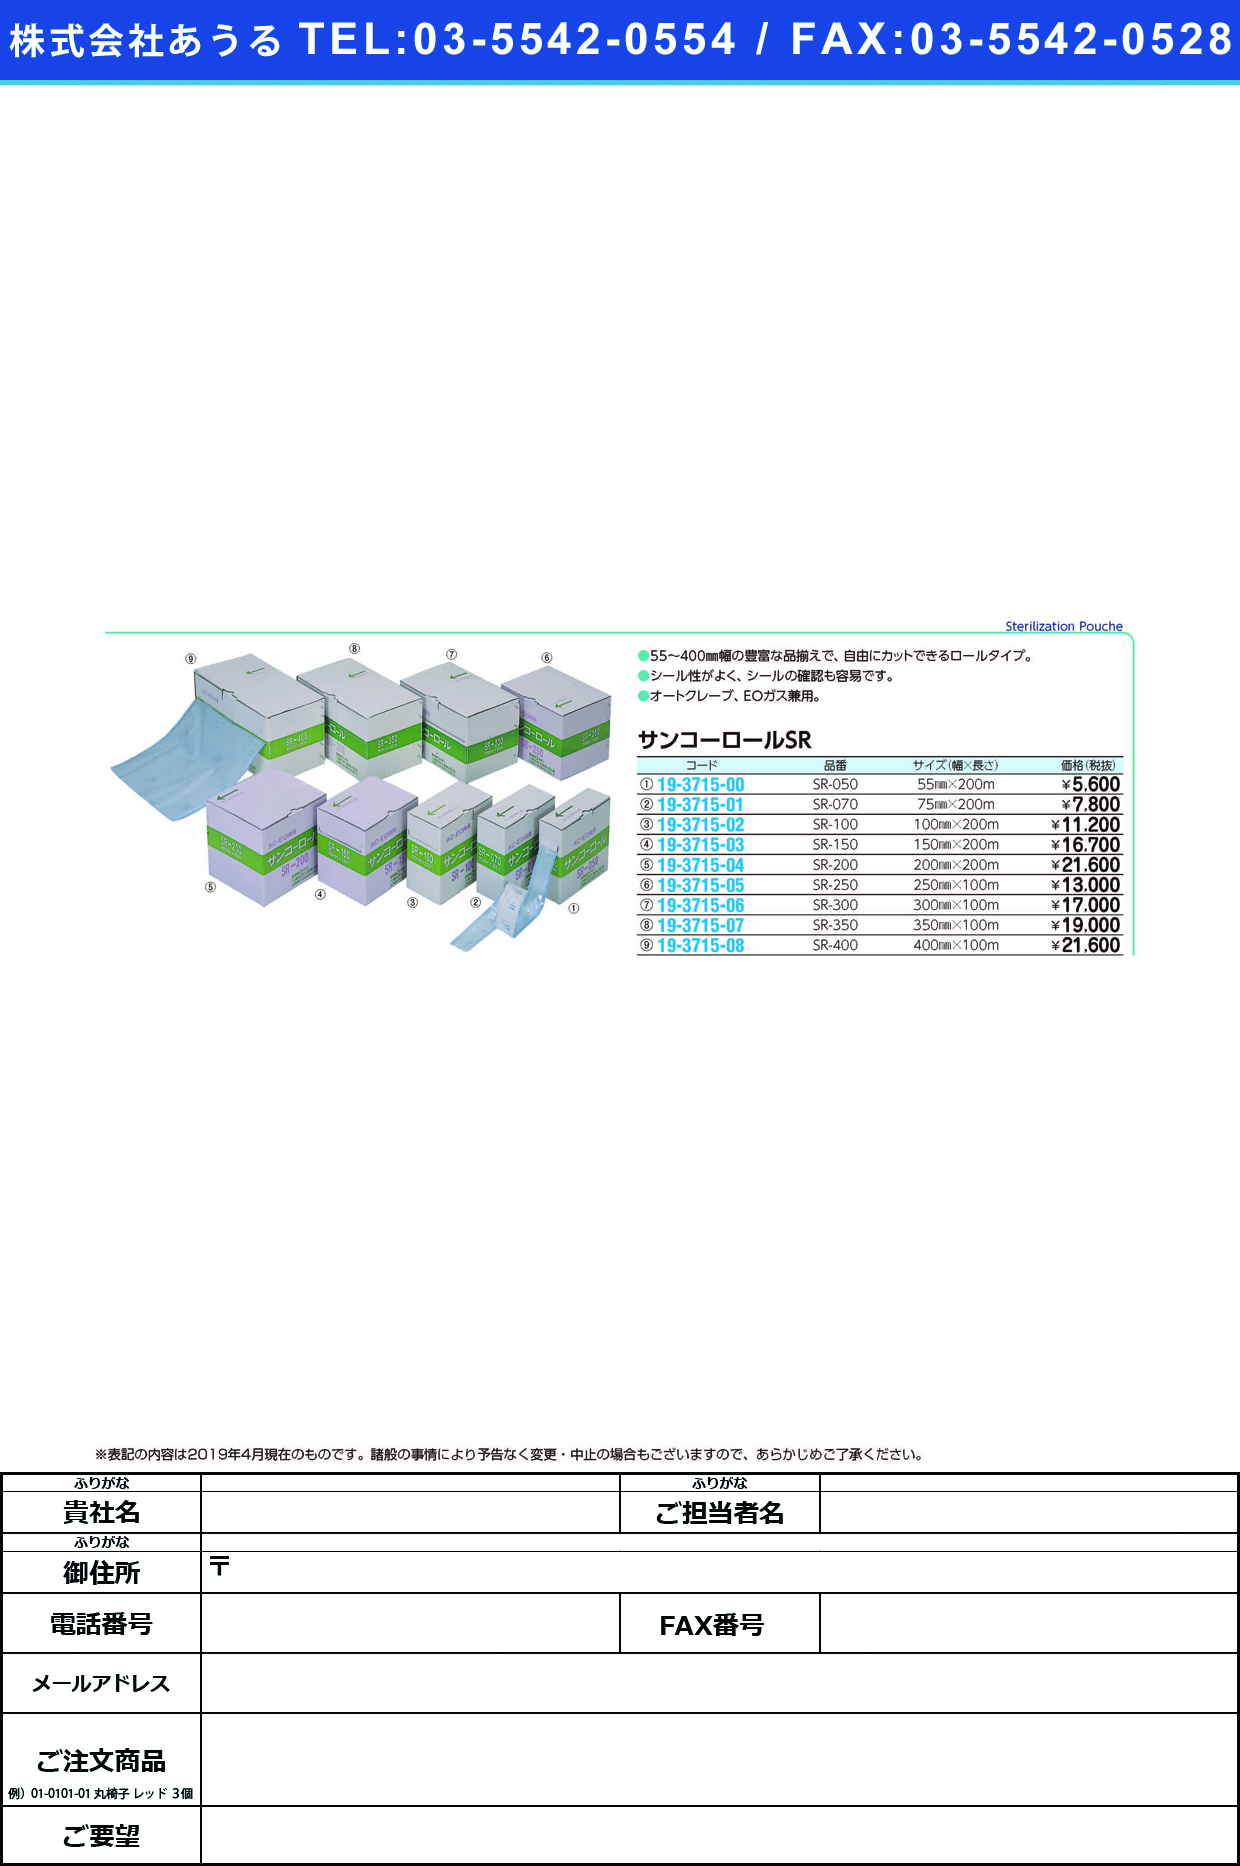 (19-3715-05)サンコーロール SR-250(250MMX100M) ｻﾝｺｰﾛｰﾙ(三興化学工業)【1巻単位】【2019年カタログ商品】